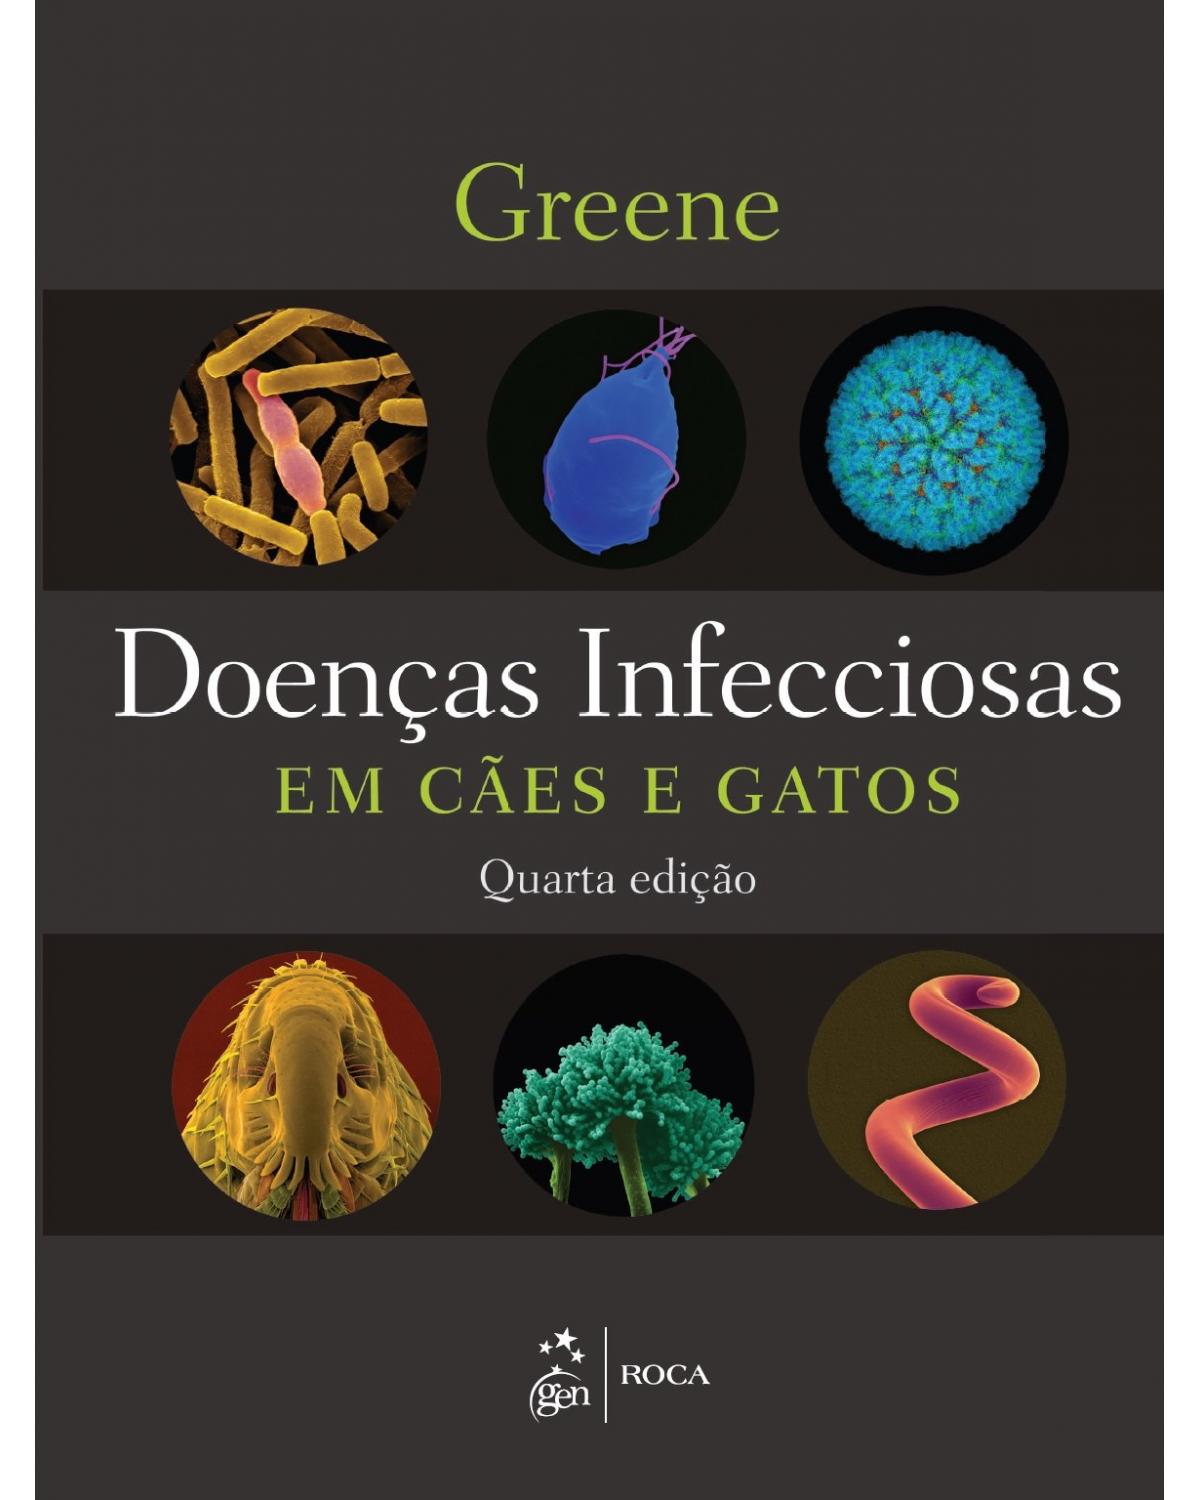 Doenças infecciosas em cães e gatos - 4ª Edição | 2015